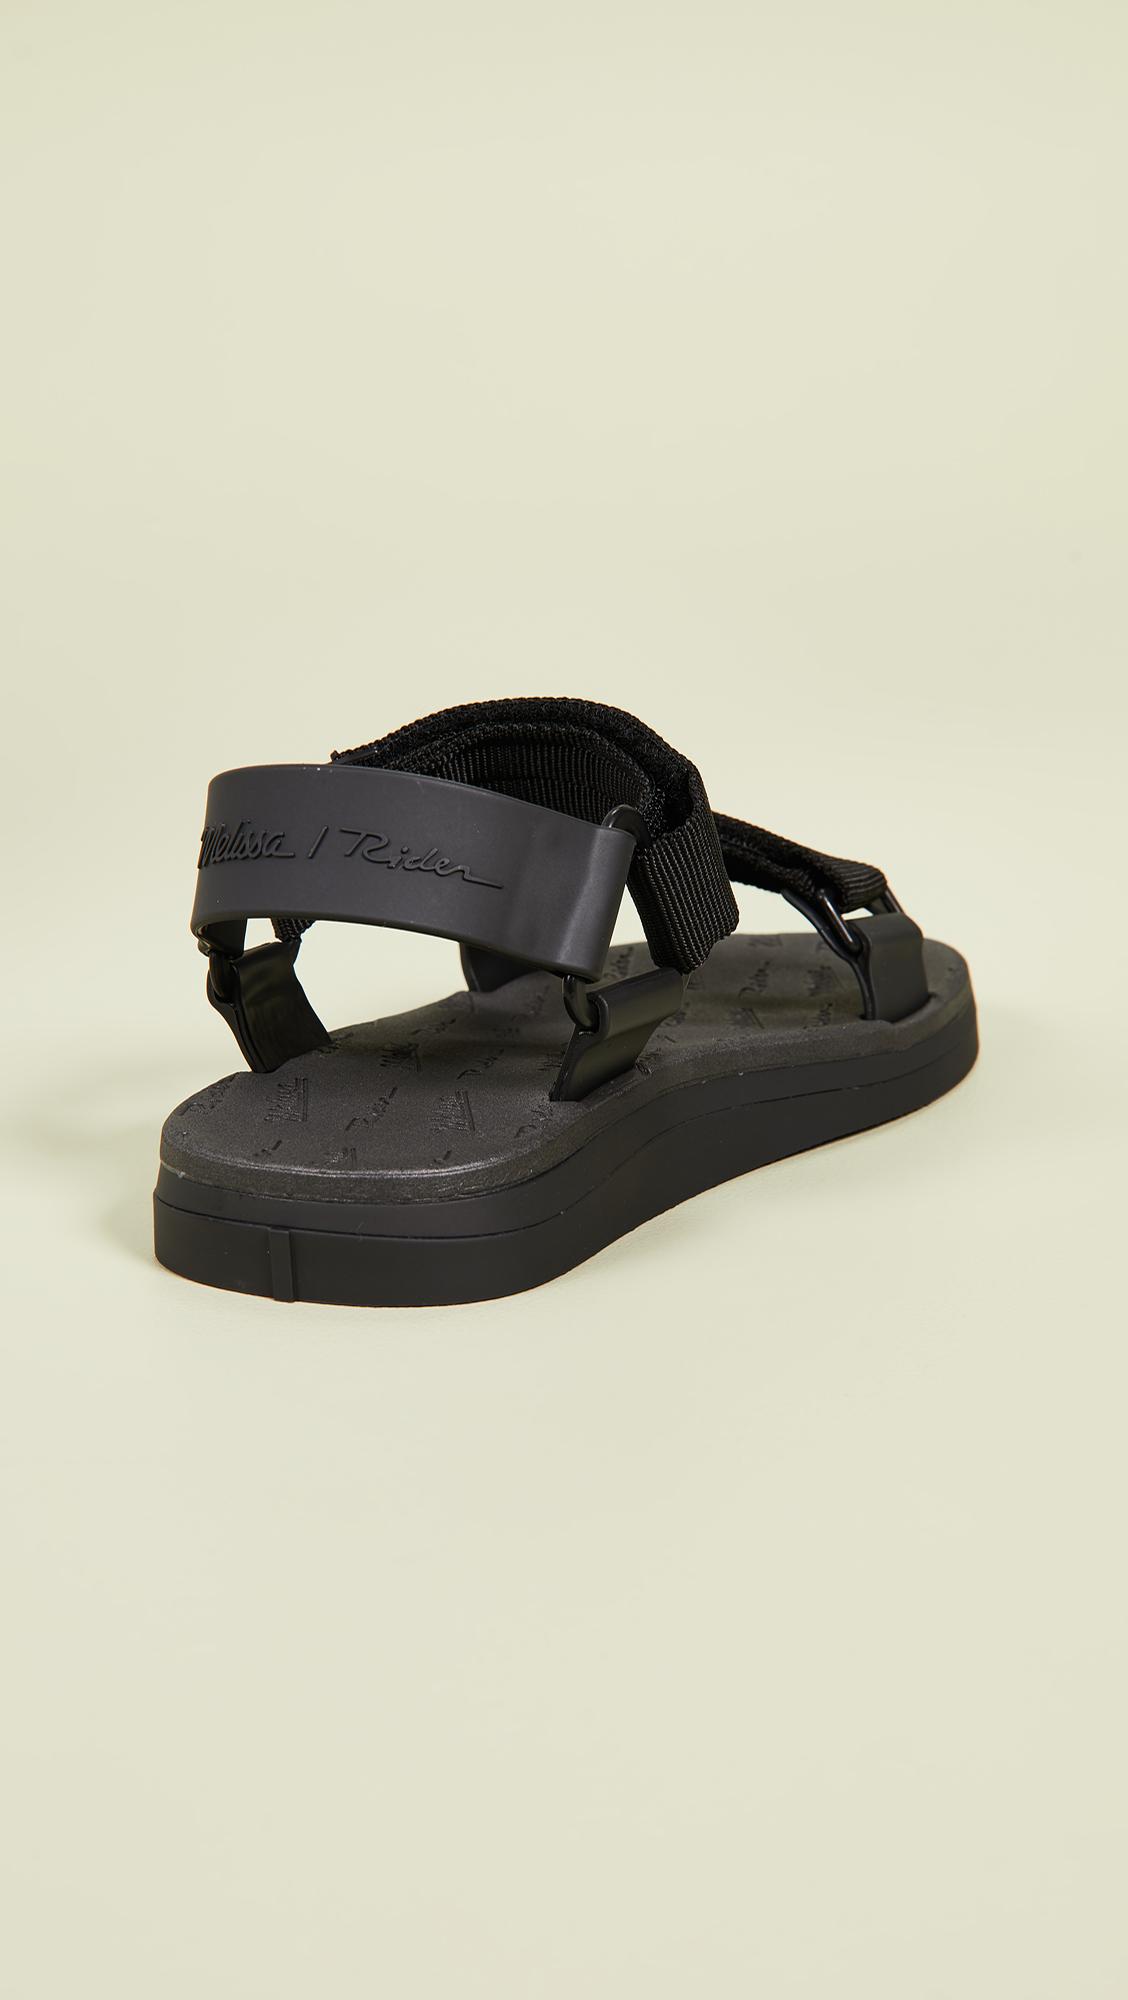 Melissa X Rider Papete Sandals in Black | Lyst